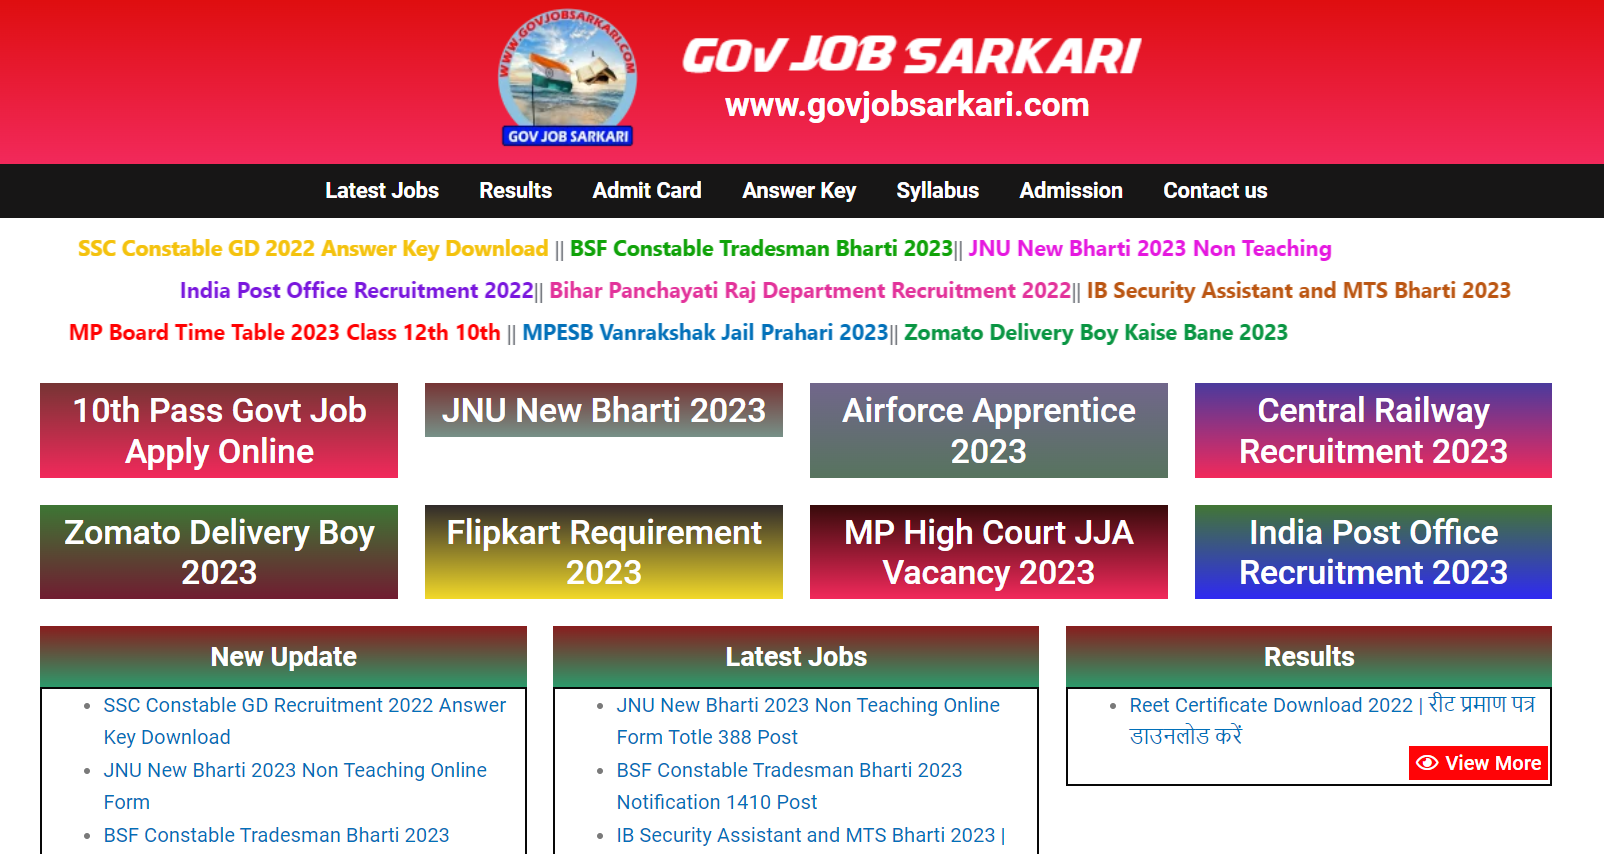 Gov Job Sarkari